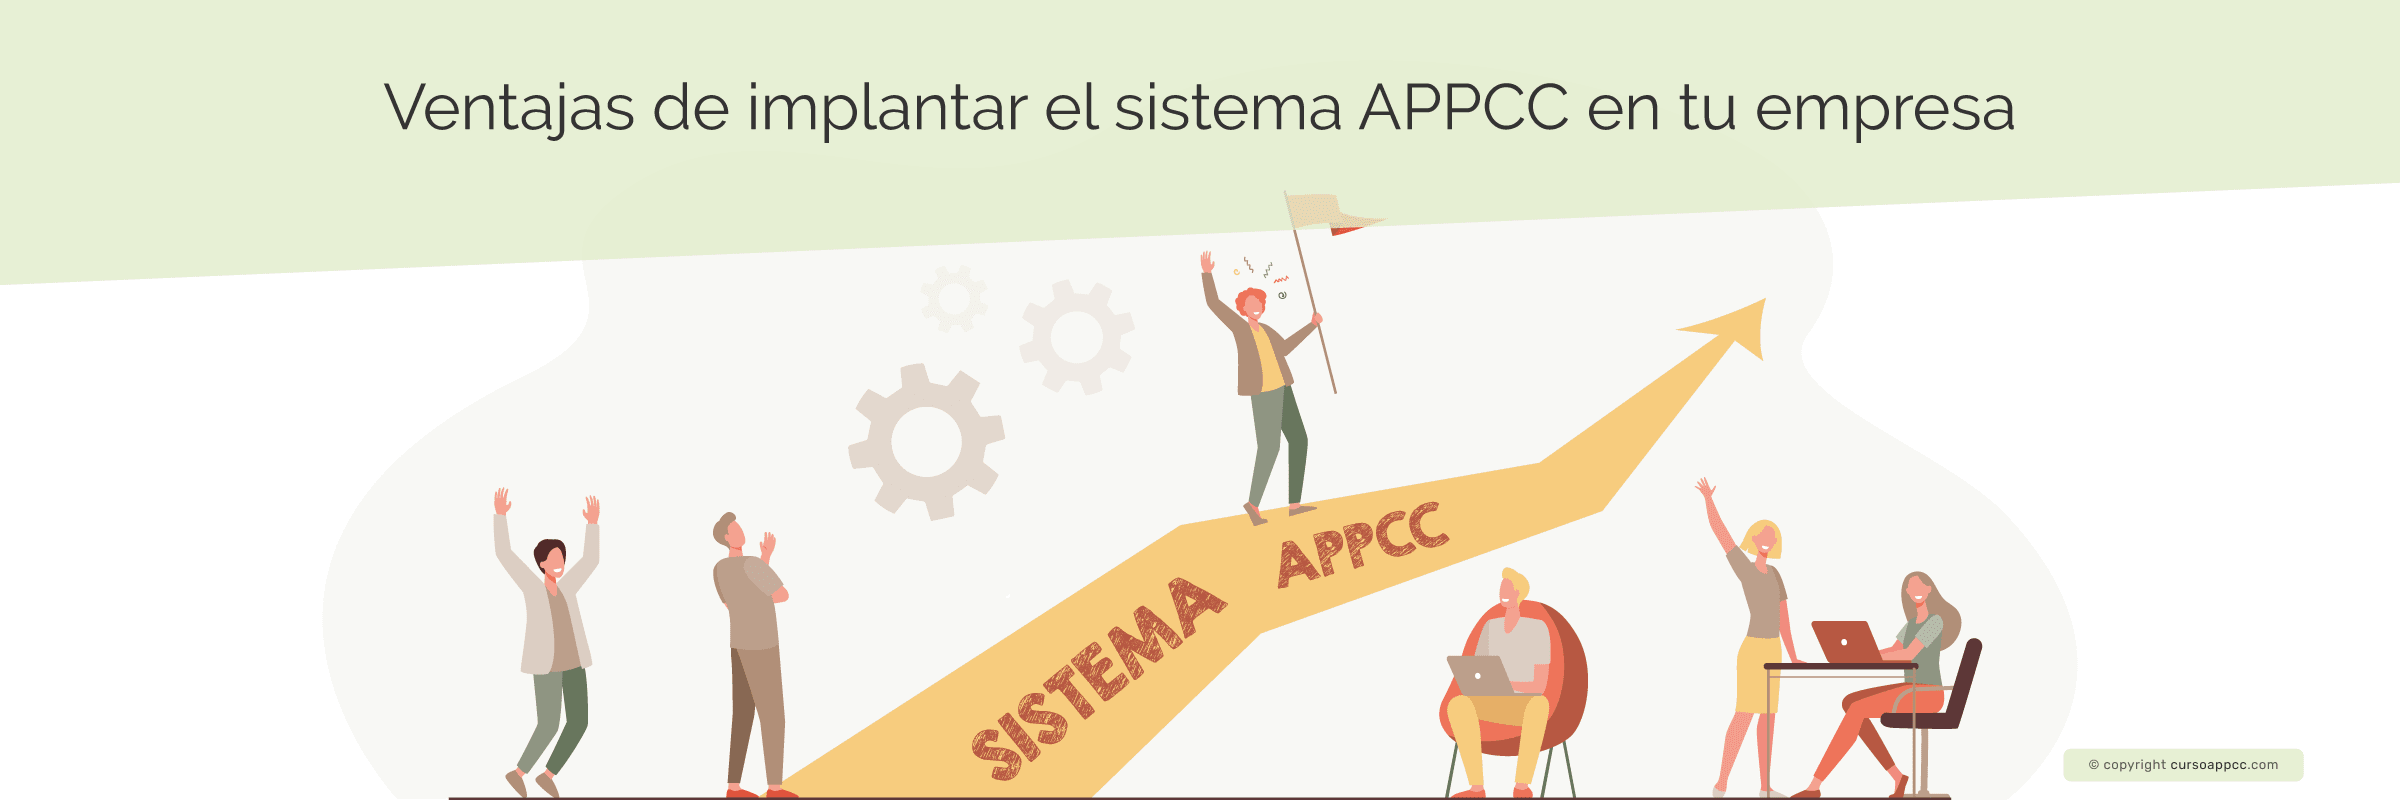 Ventajas de implantar el sistema APPCC en tu empresa